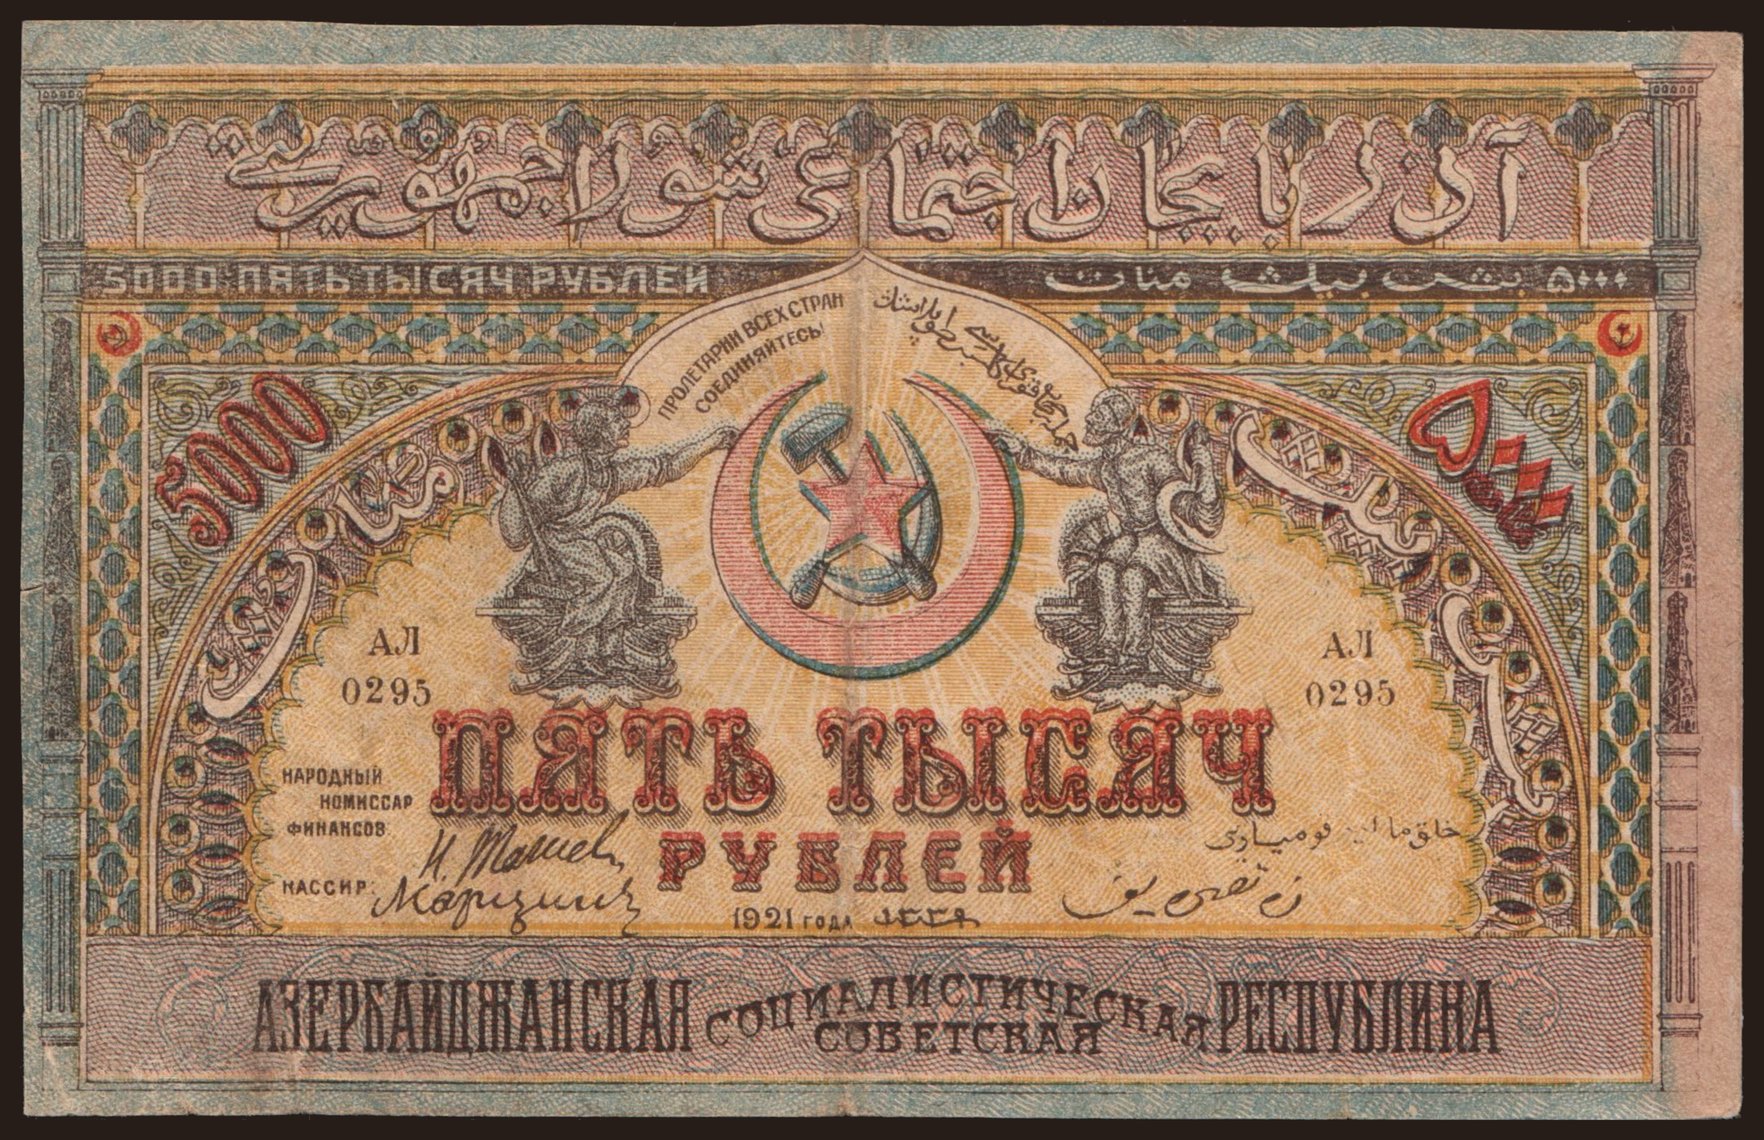 ASSR, 5000 rubel, 1921